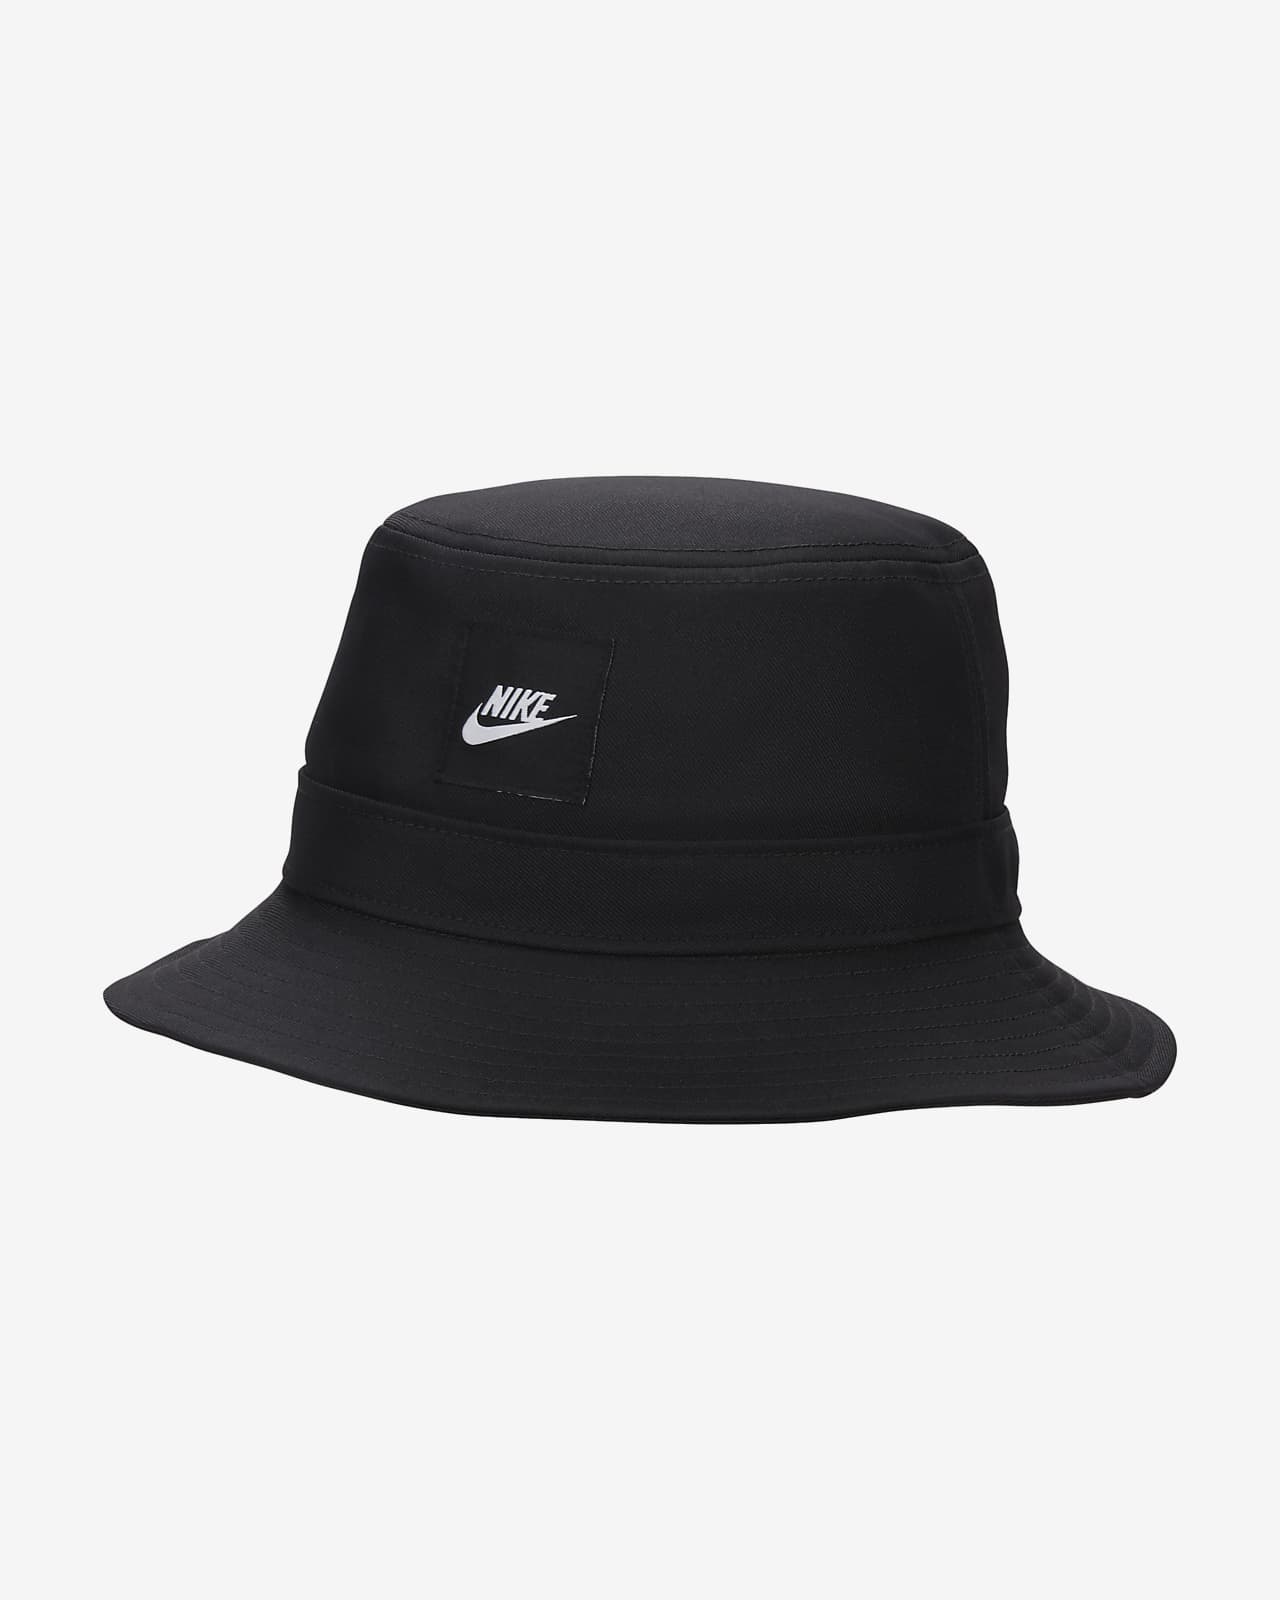 Παιδικό καπέλο bucket Futura Nike Apex